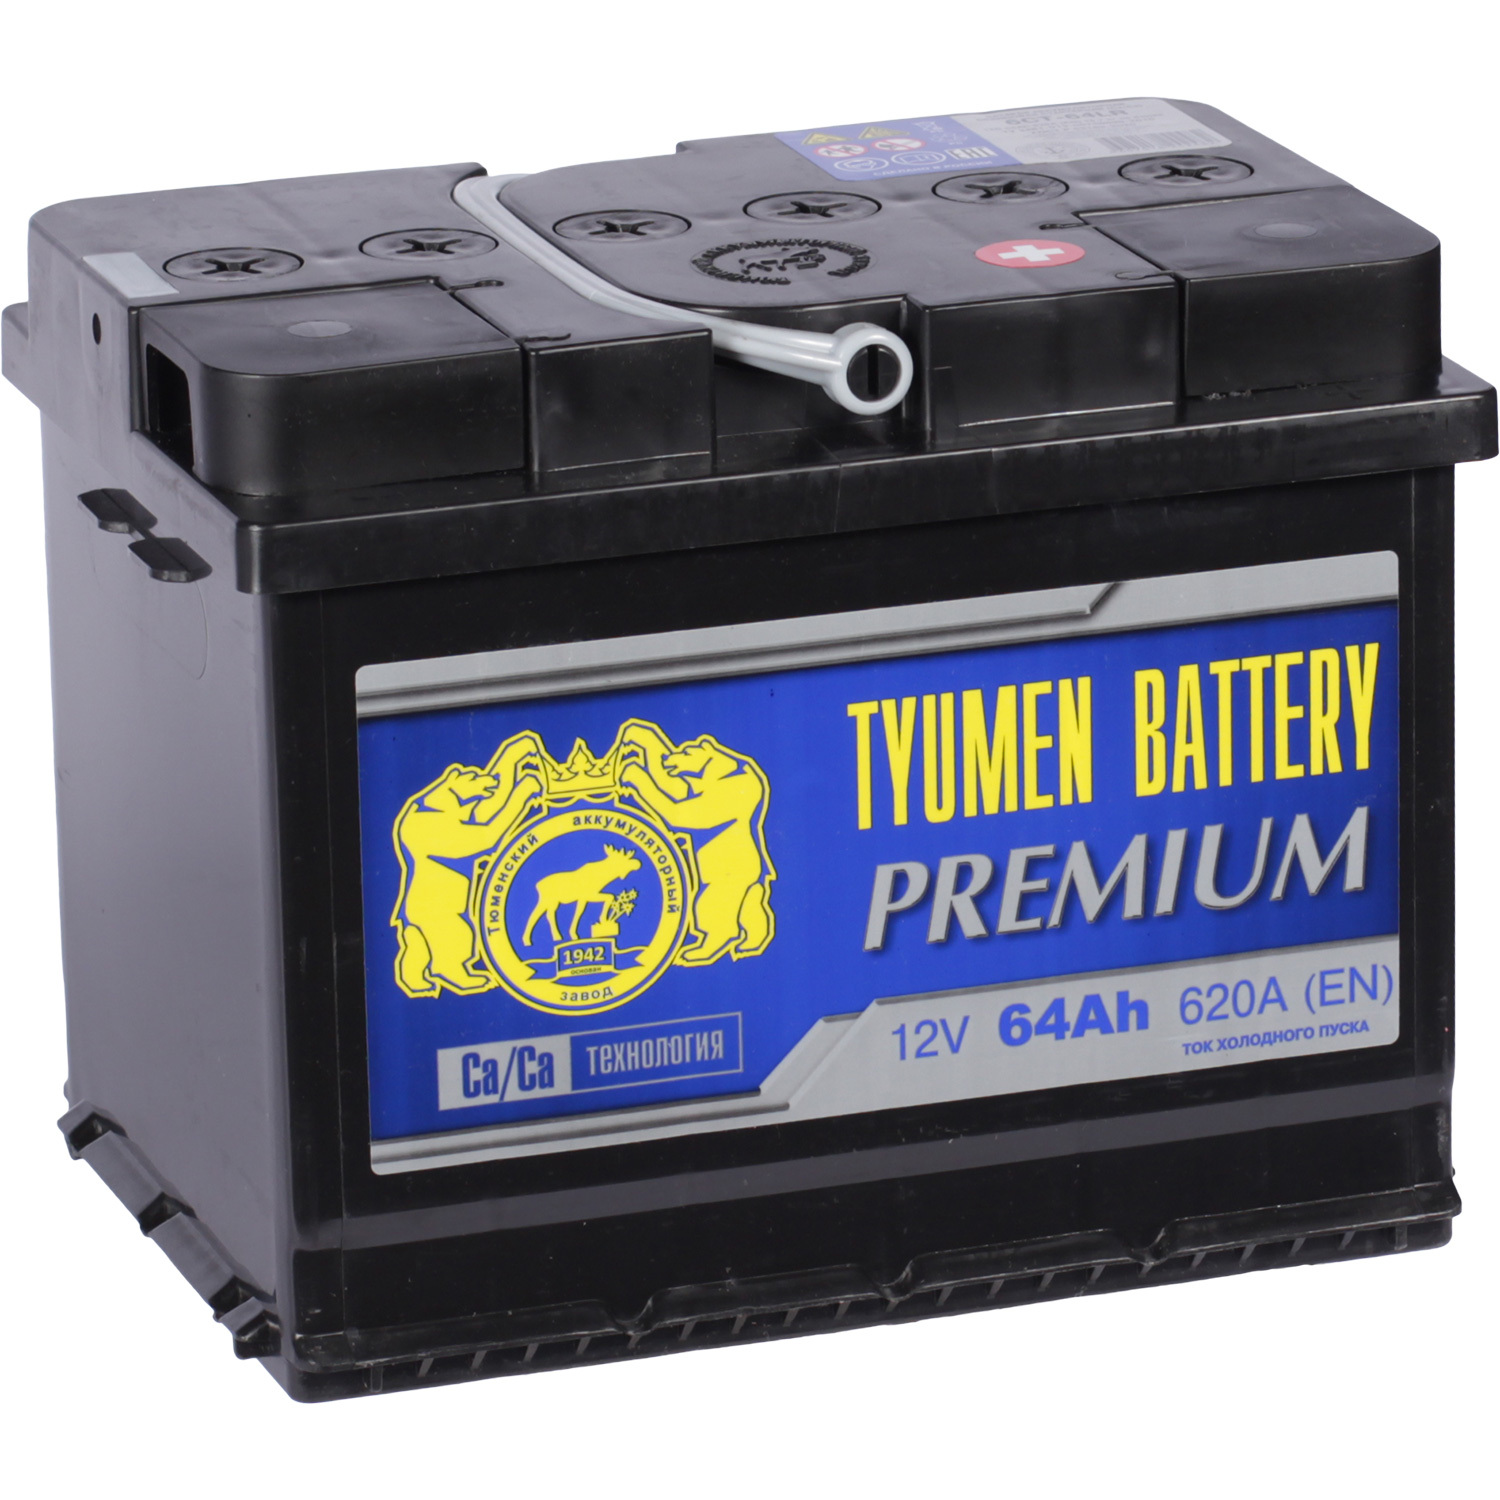 Tyumen Battery Автомобильный аккумулятор Tyumen Battery Premium 64 Ач обратная полярность L2 tyumen battery автомобильный аккумулятор tyumen battery 95 ач прямая полярность d31r